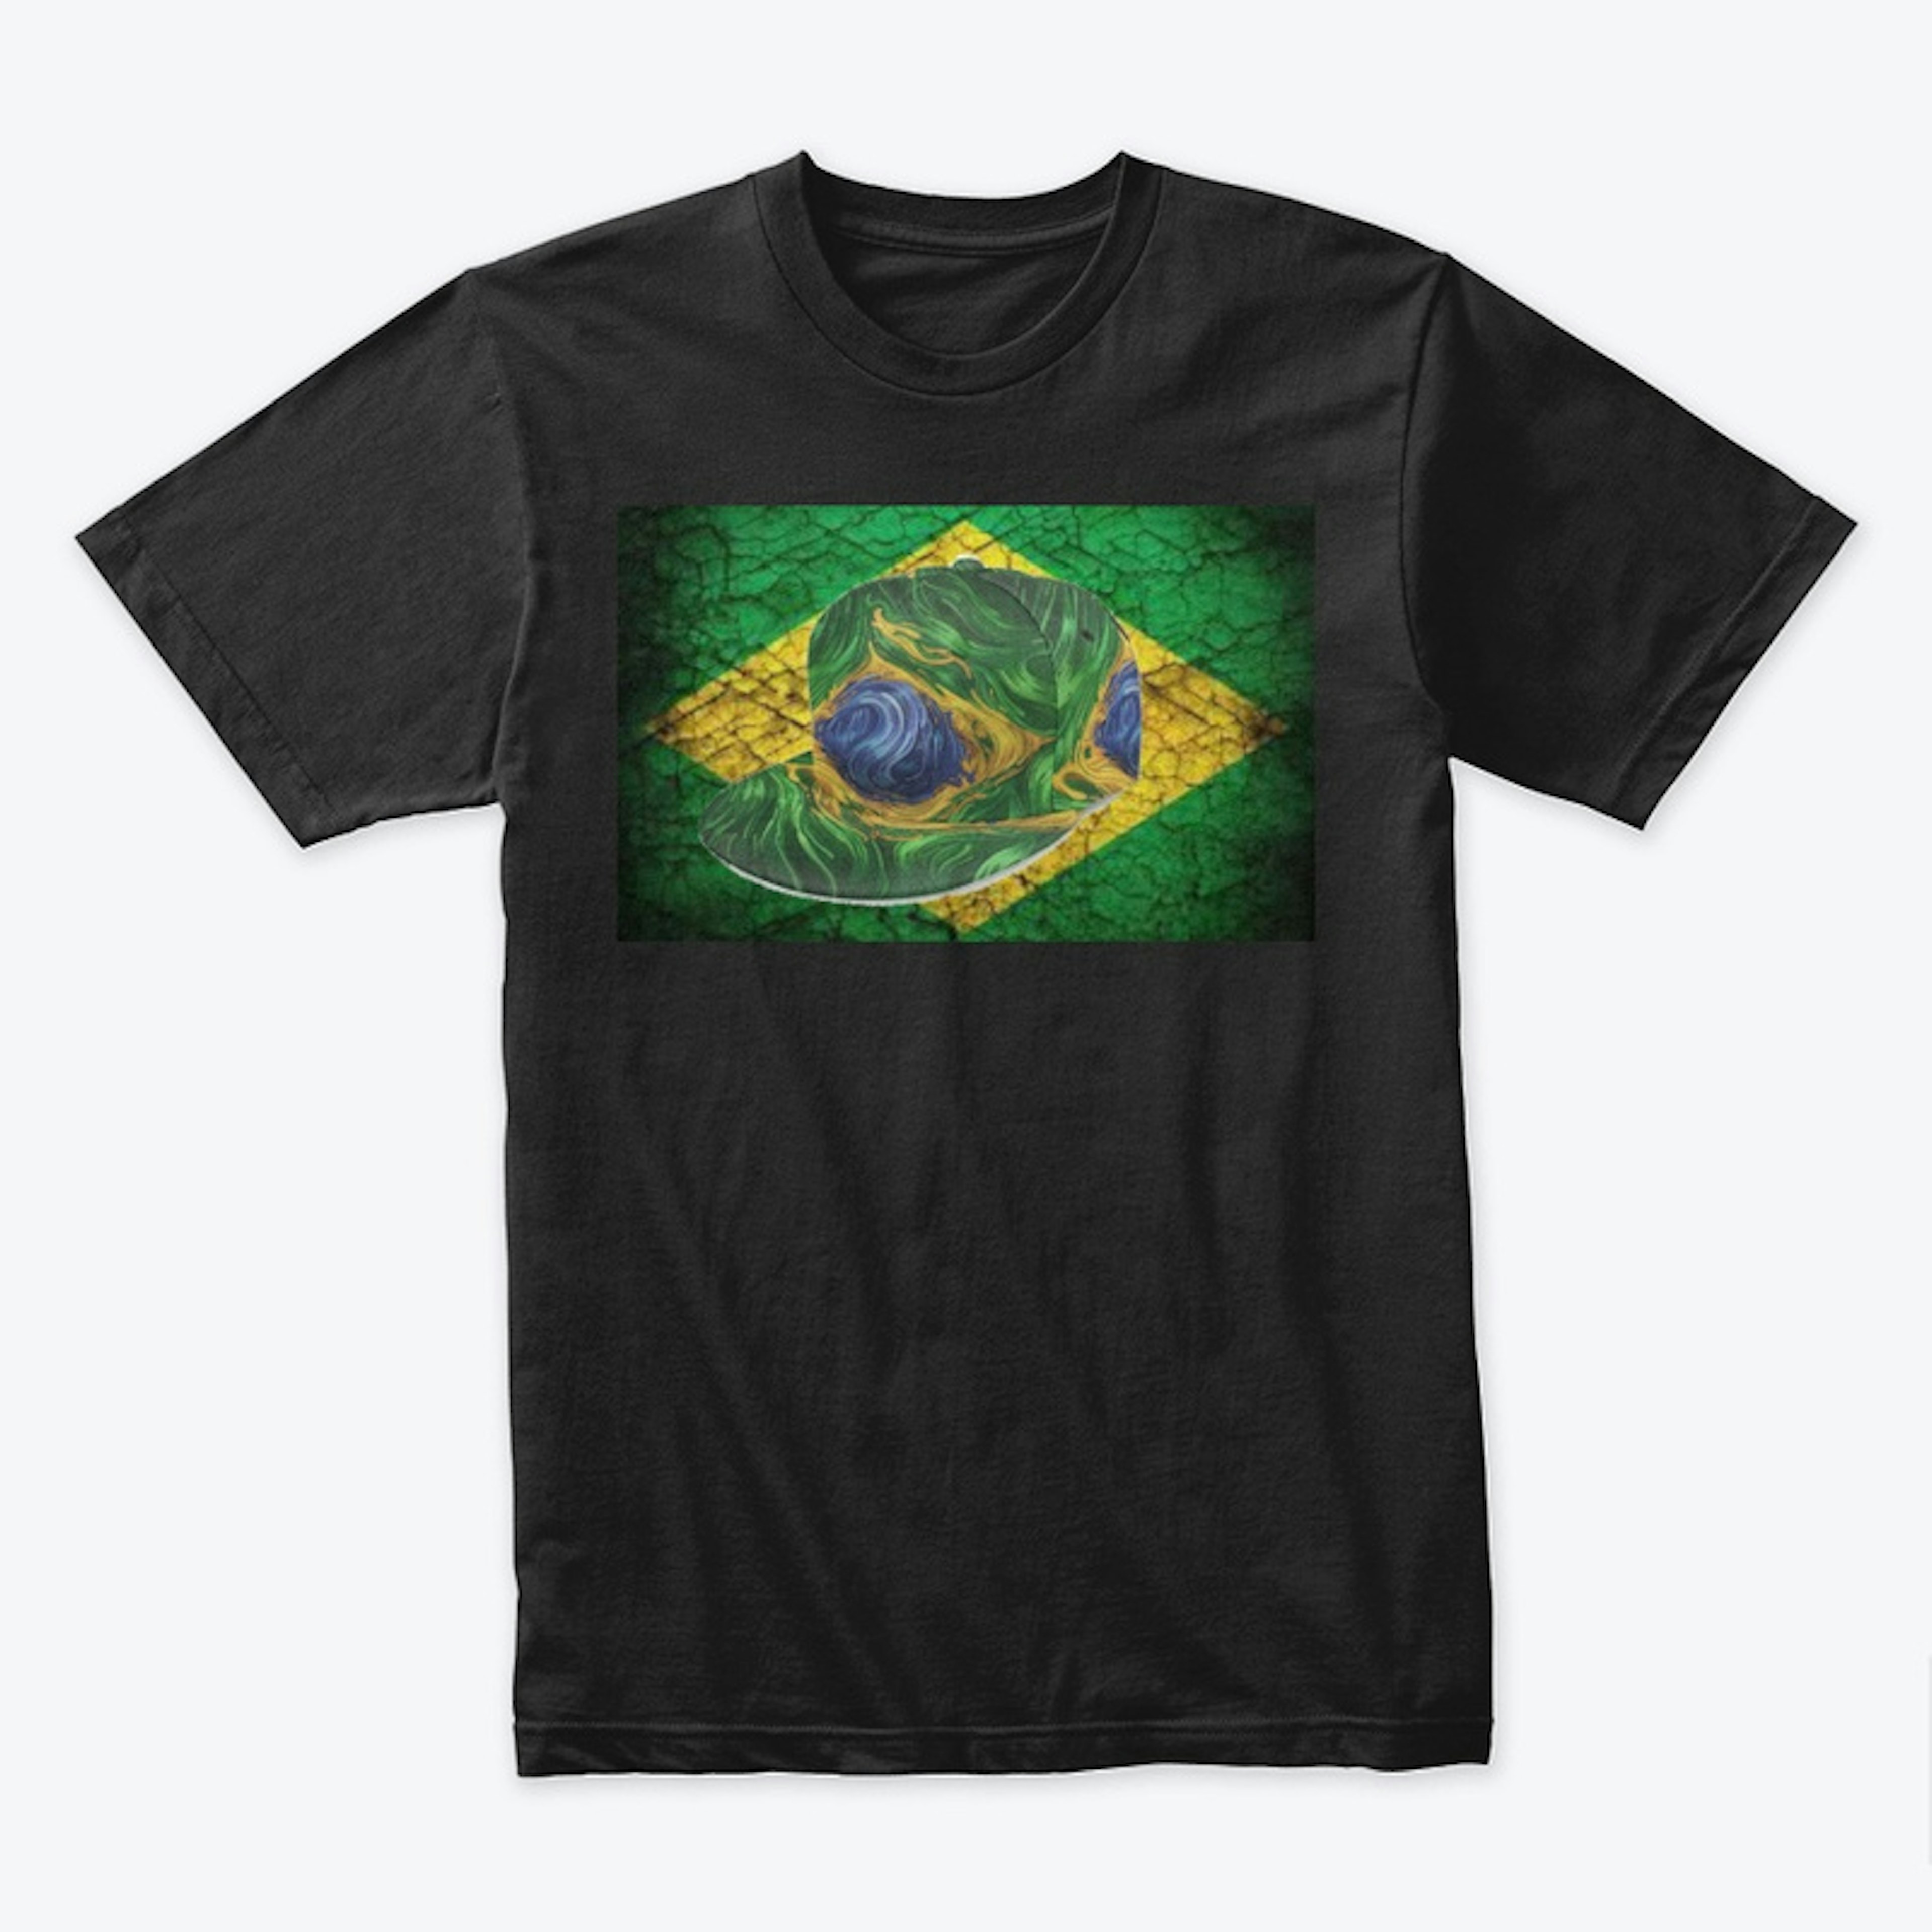 Brazil Tee